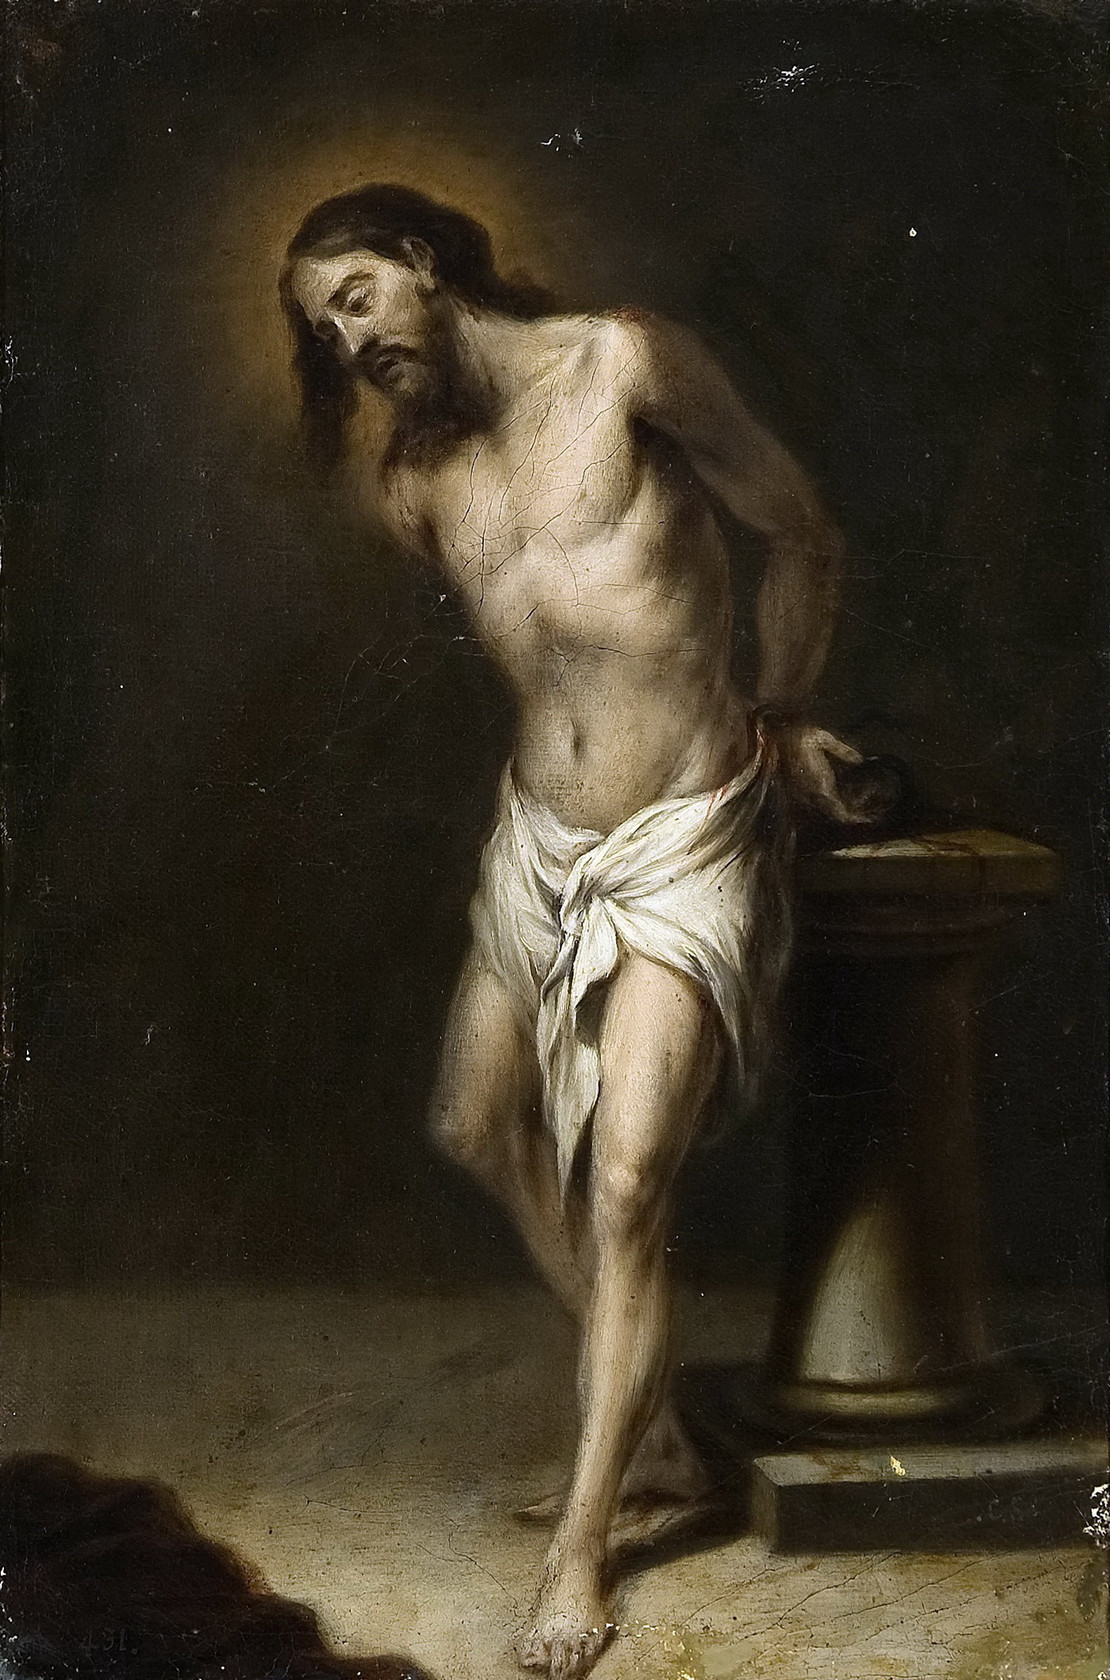 Картина Христос у колонны - музей Прадо